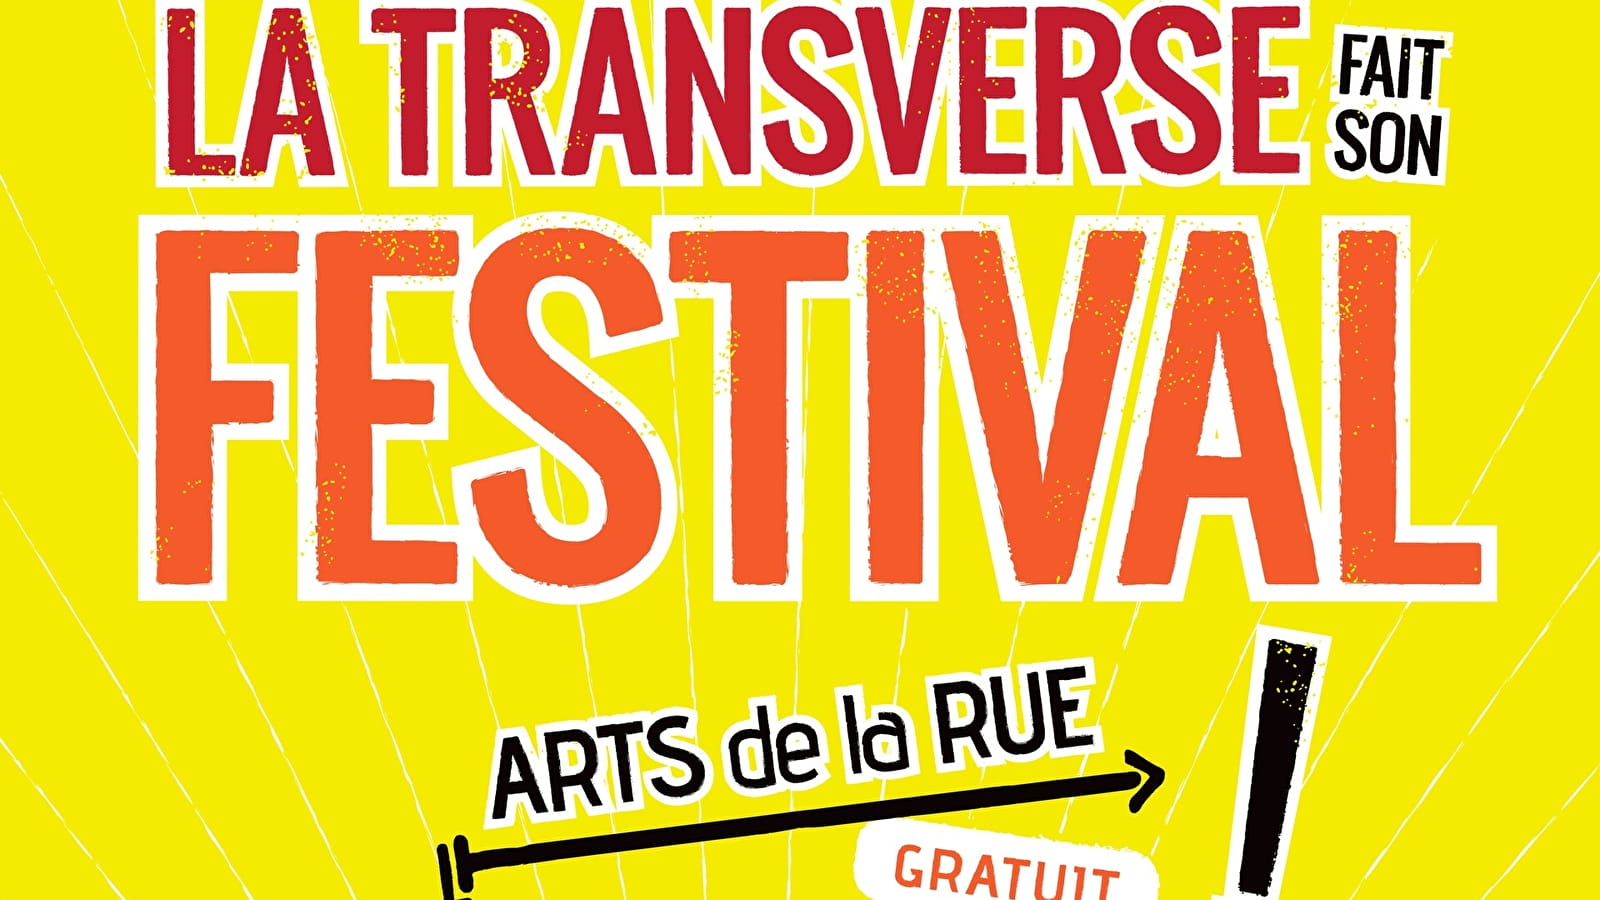 Die Transversale macht ihr Festival! in Lormes